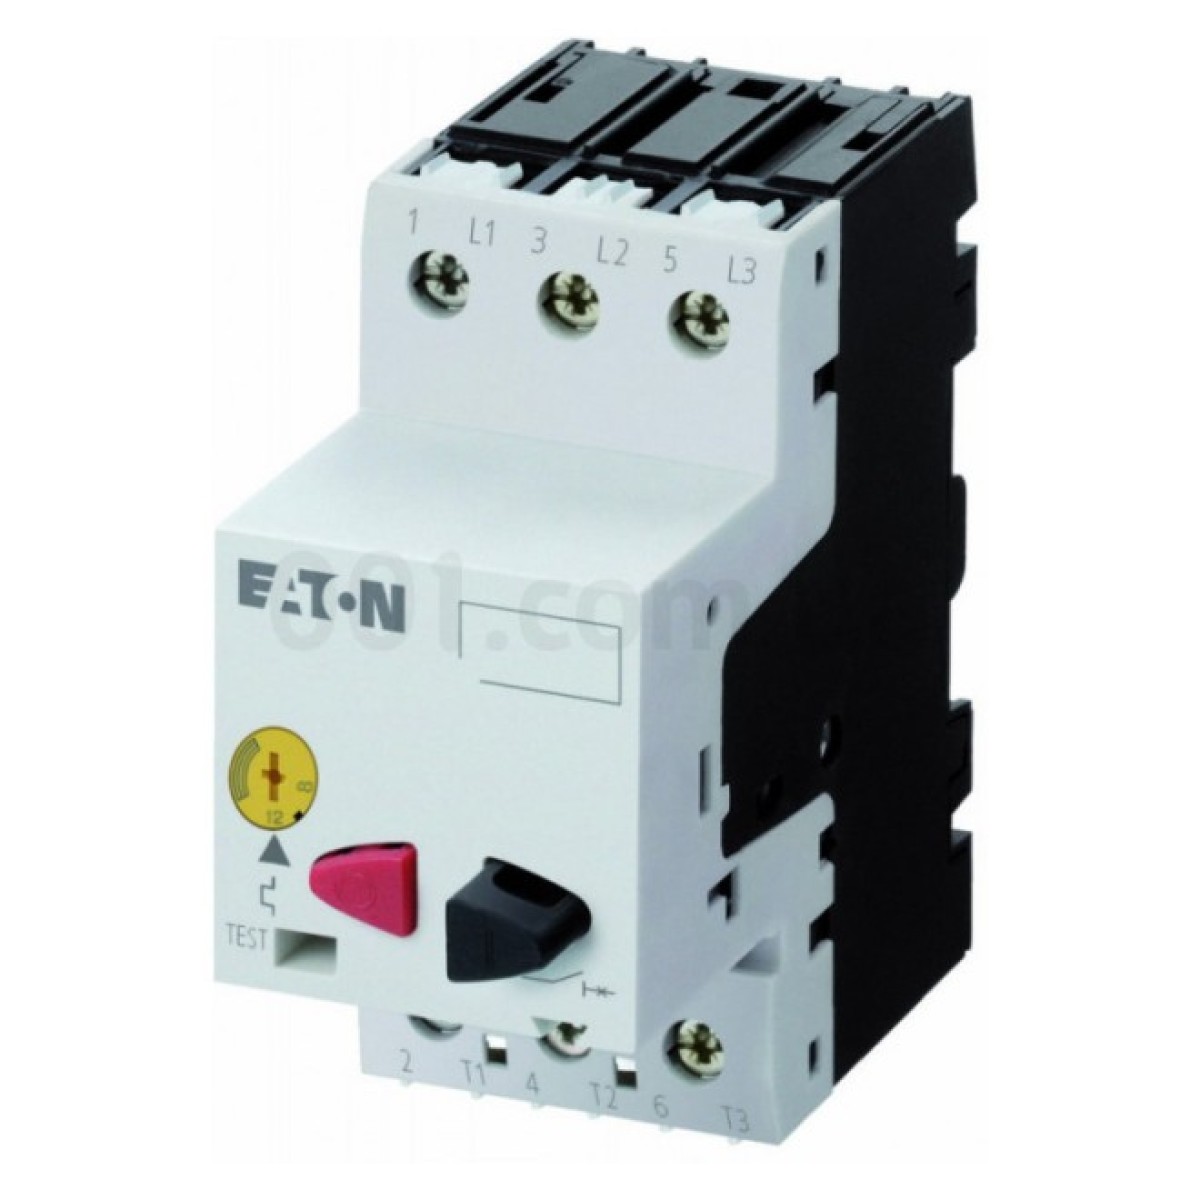 Автоматический выключатель защиты двигателя PKZM01-25 Ir=20...25А, Eaton (Moeller) 256_256.jpg